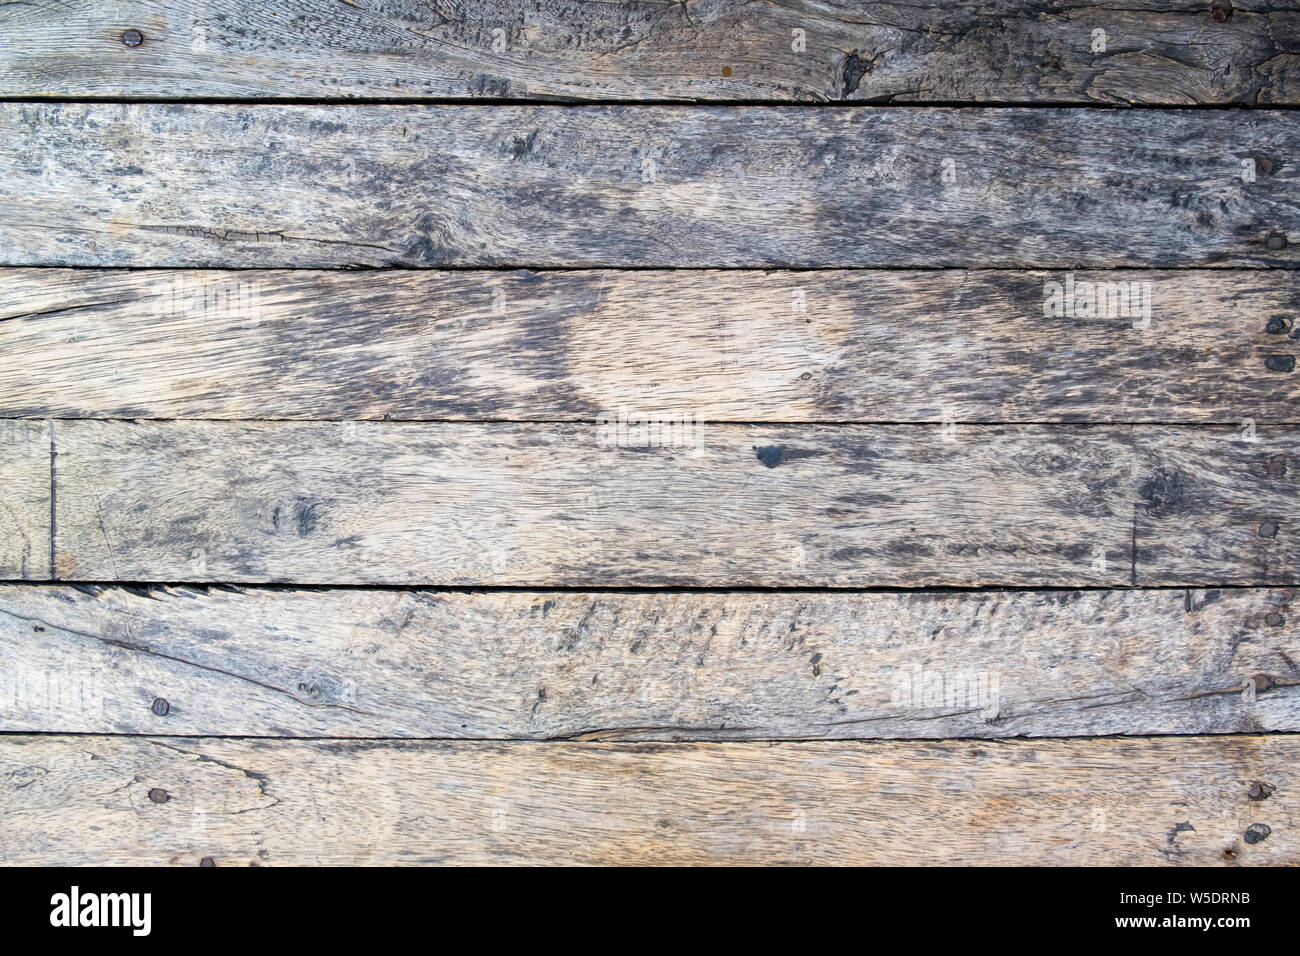 Texture di legno antico. Immagine di sfondo. Foto macro. Foto Stock